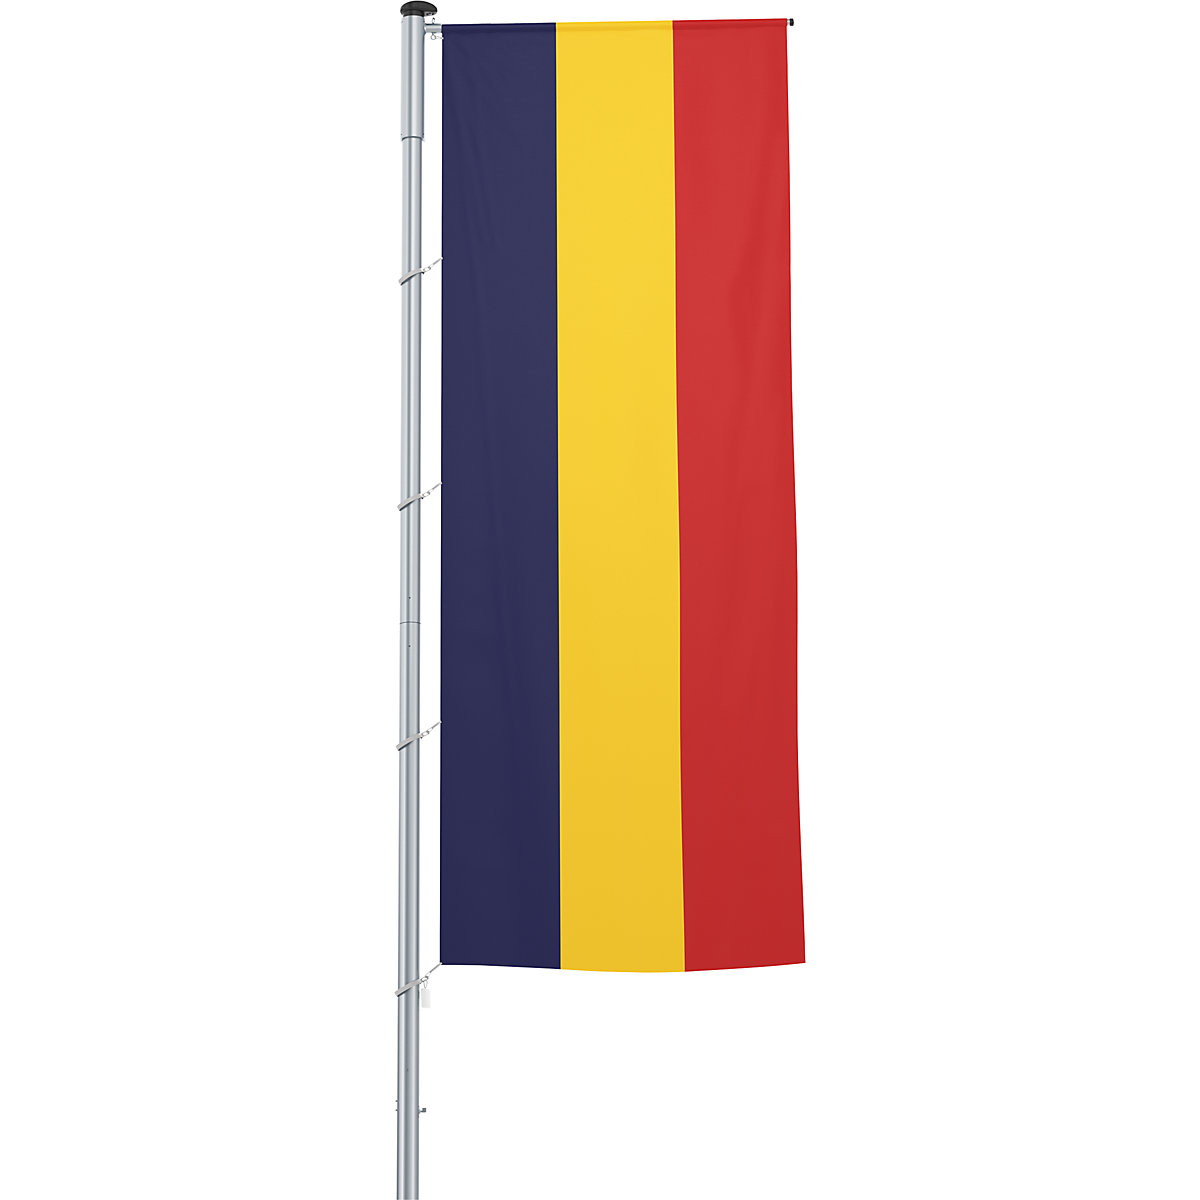 Mastvlag/landvlag – Mannus, formaat 1,2 x 3 m, Roemenië-2